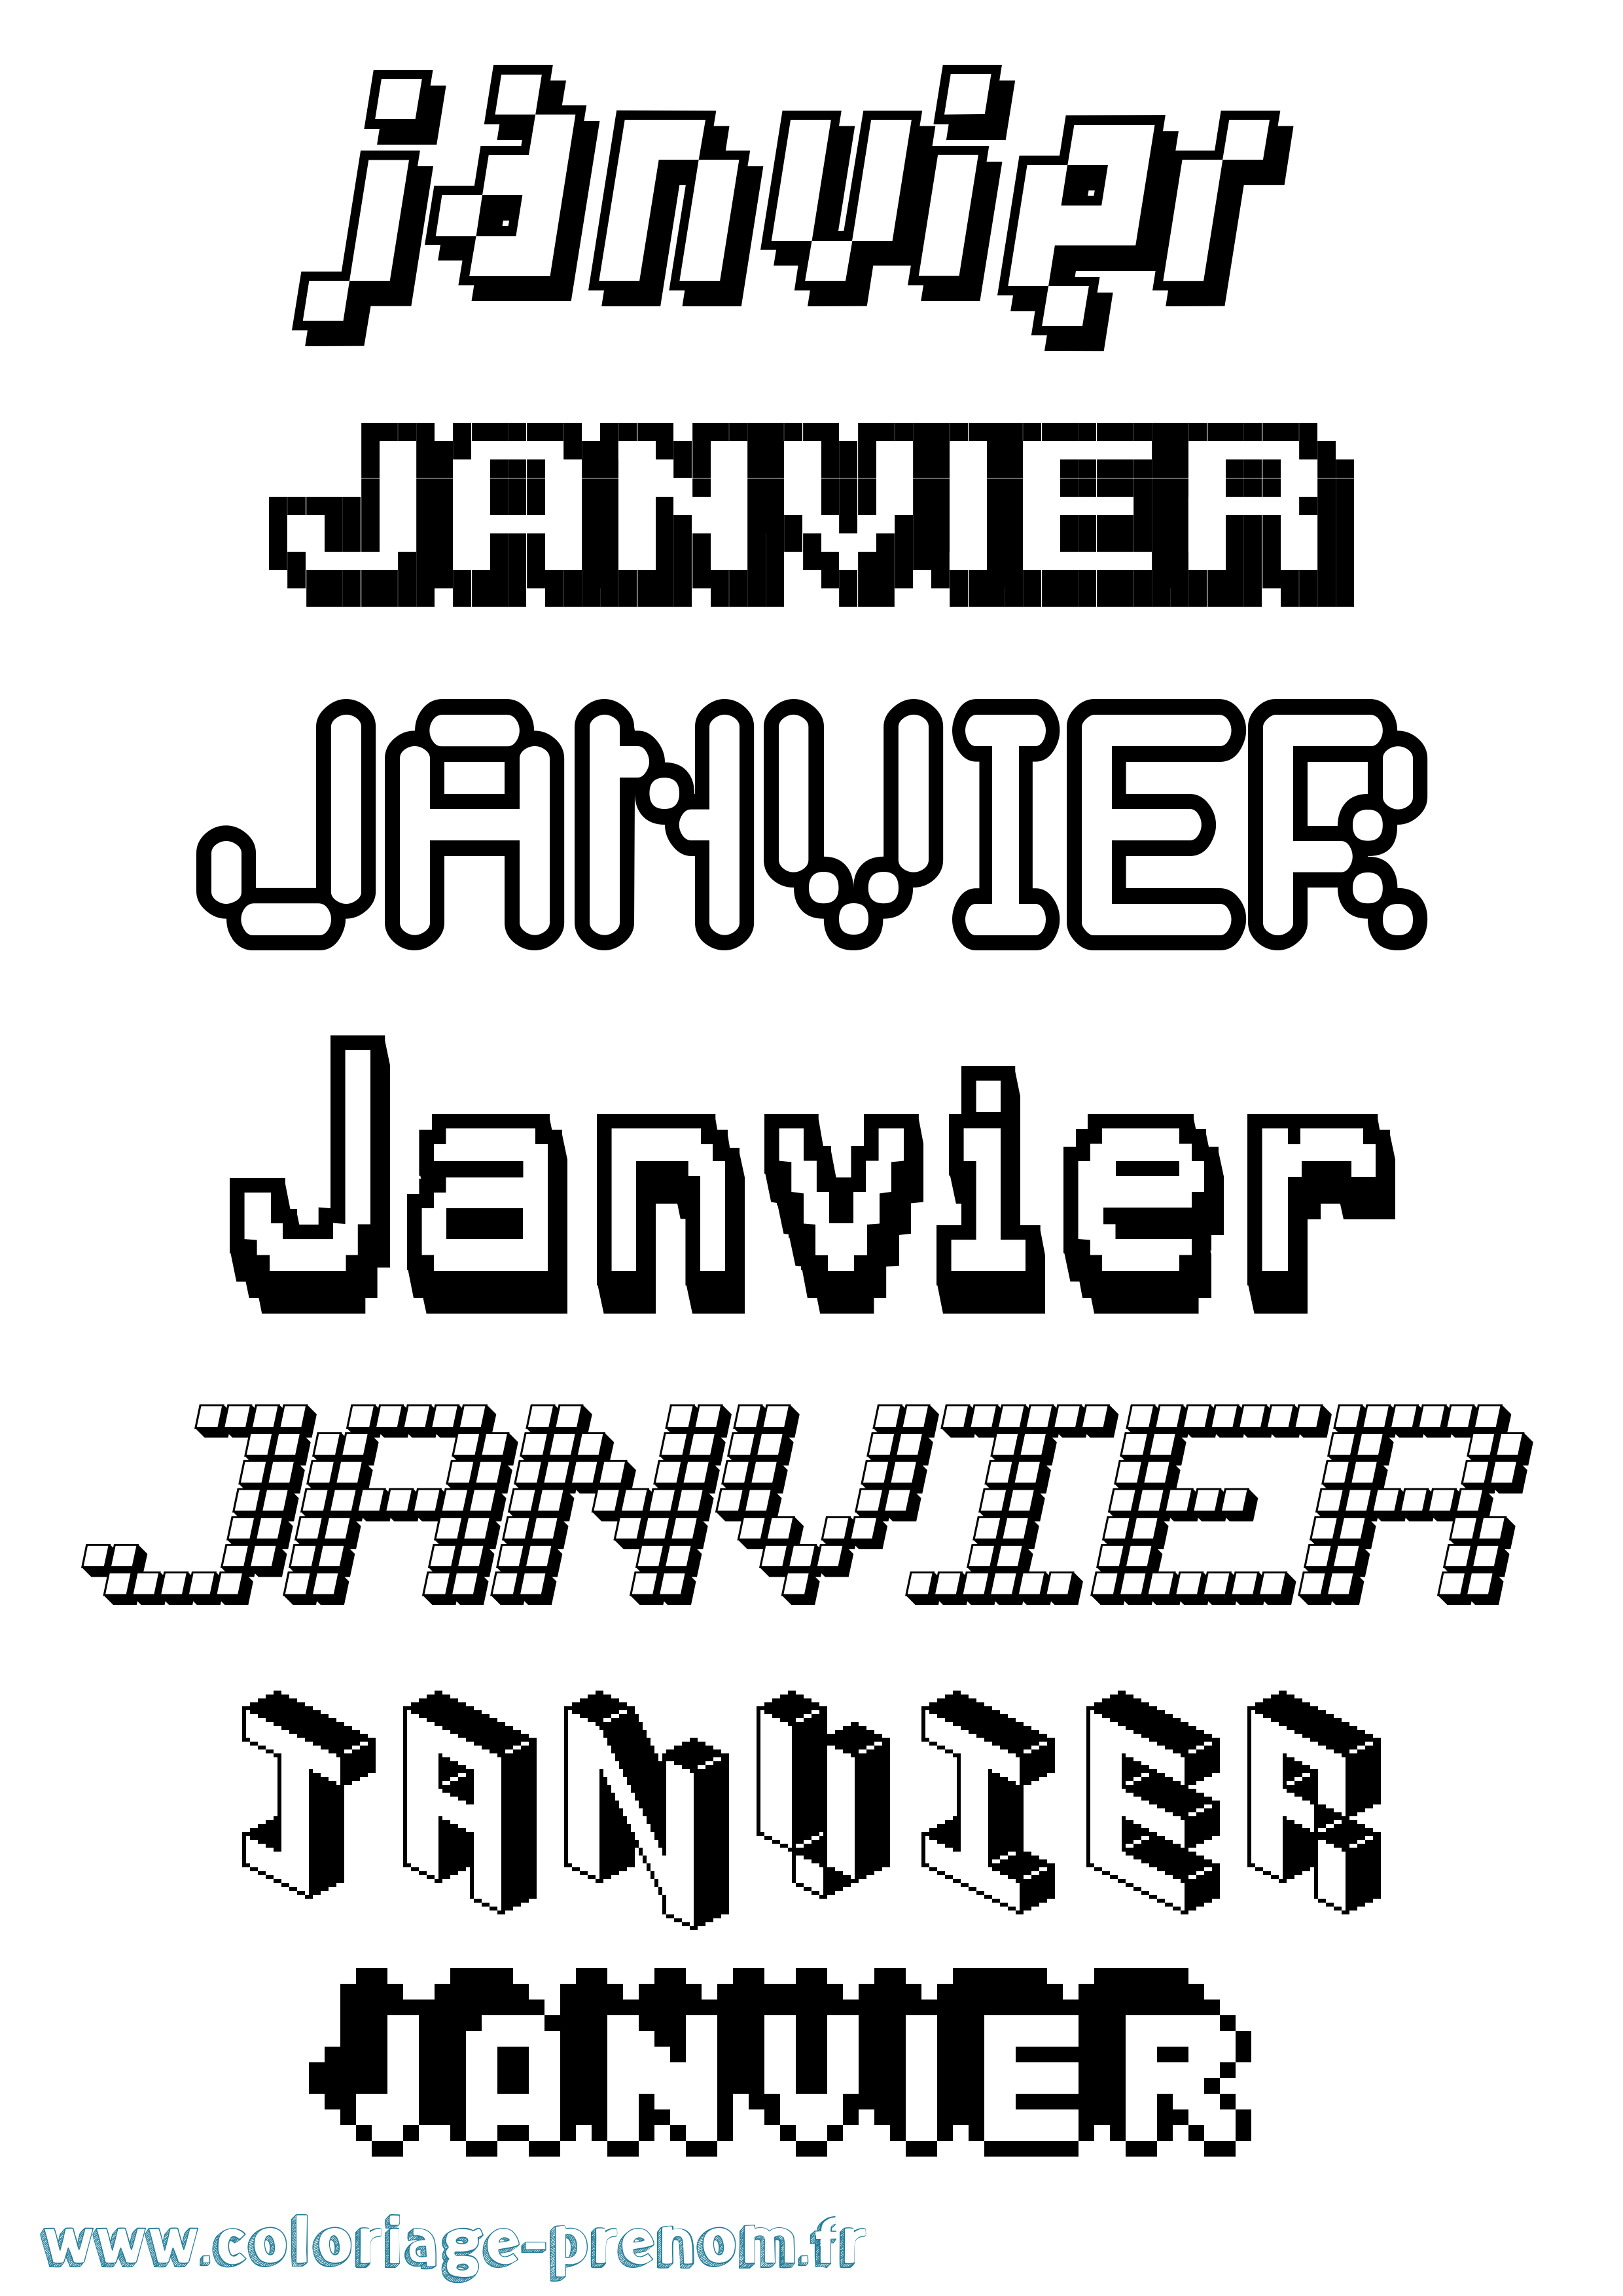 Coloriage prénom Janvier Pixel